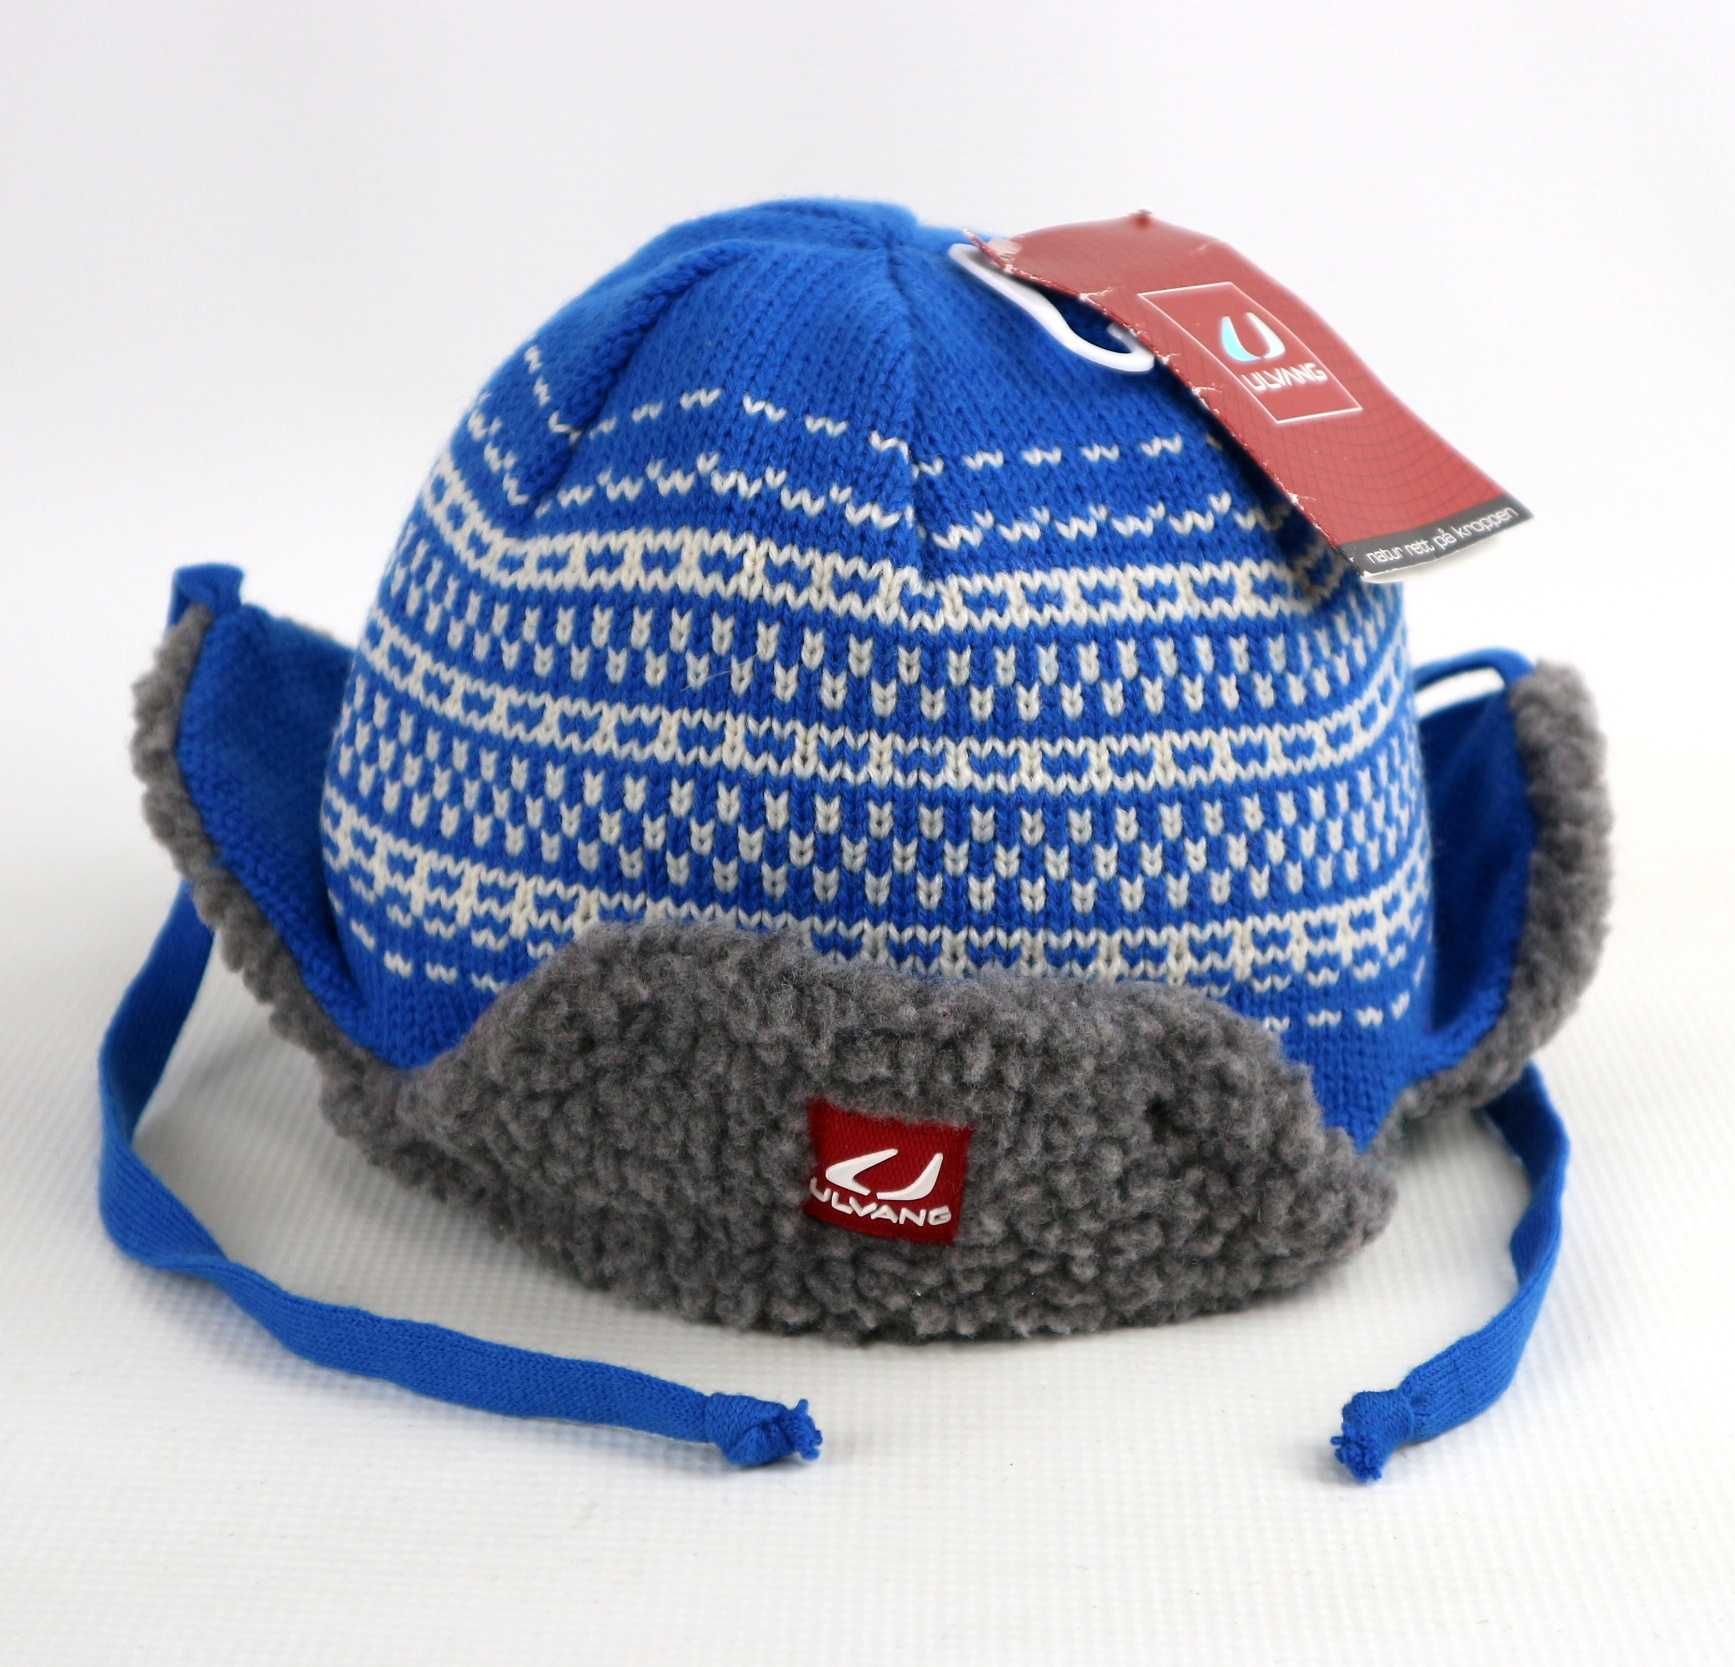 Ulvang Bugoynes Hat czapka uszatka 100% merino wool 53